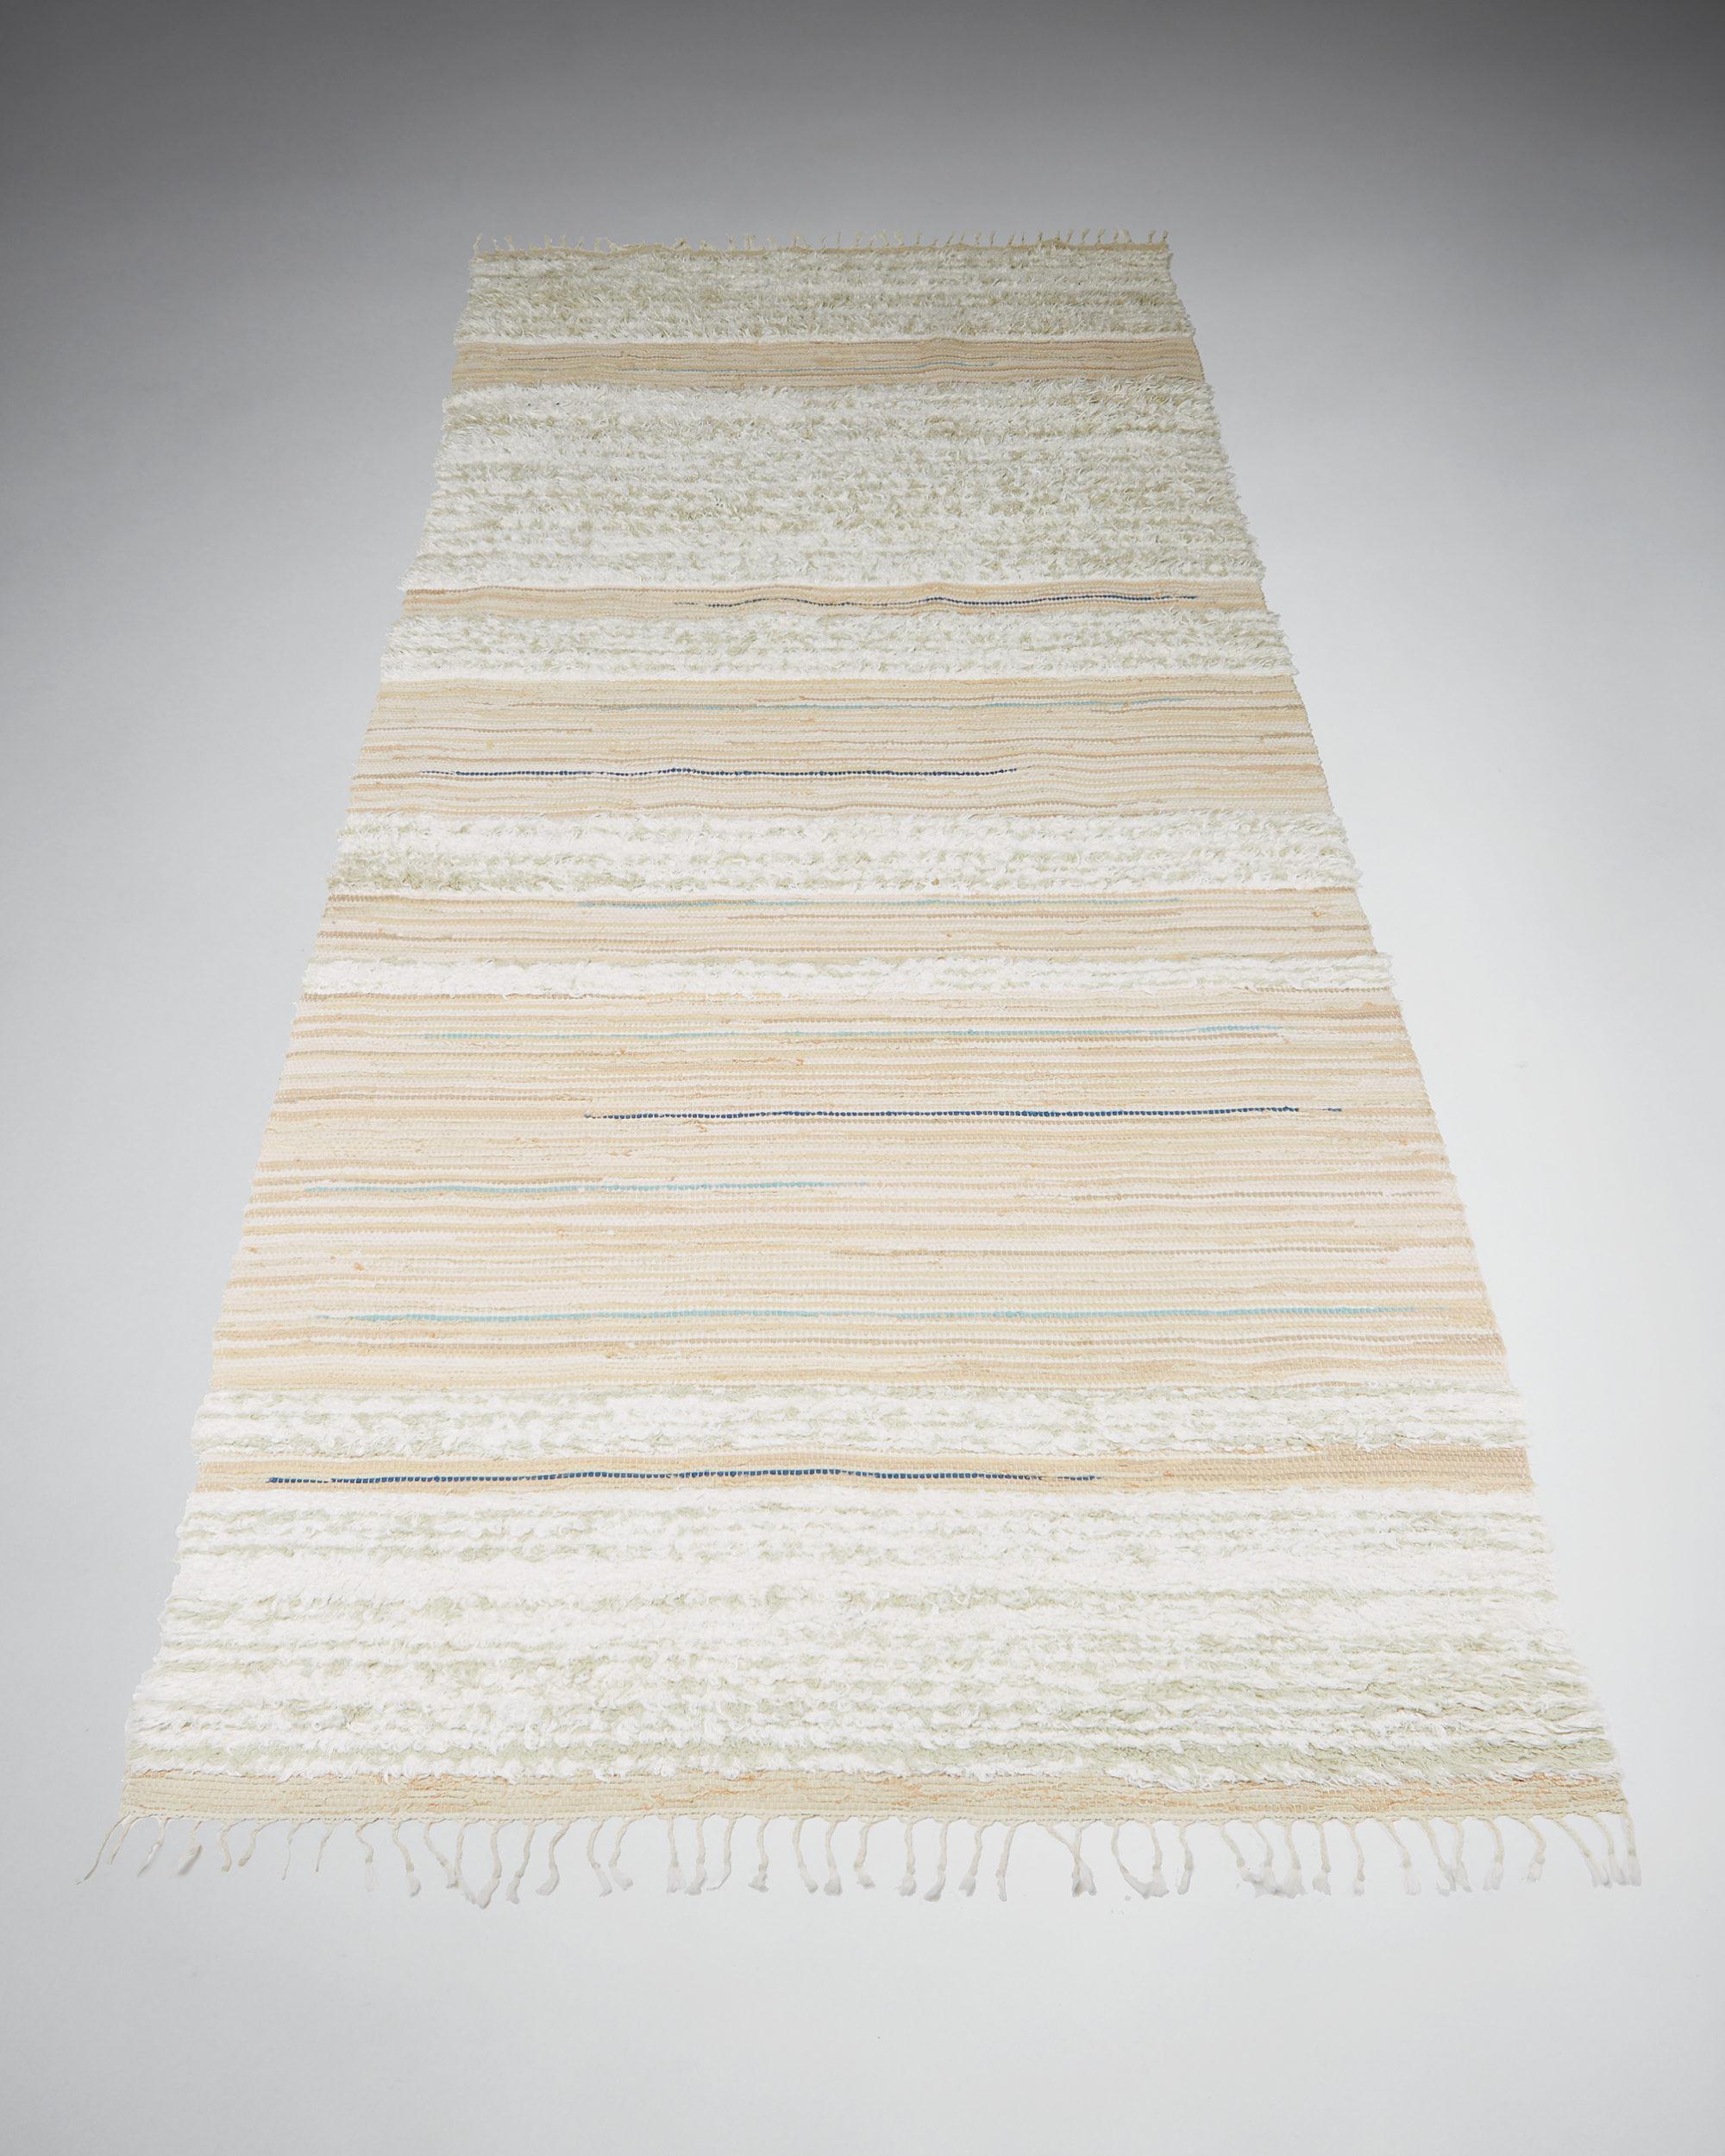 Rag rug anonymous,
Sweden. 1960's.

Cotton with linen pile. Rag technique.

Provenance: Halmstad castle.

Dimensions:
L: 378 cm/ 12' 5 1/4''
W: 170 cm/ 5' 7 1/4''

 